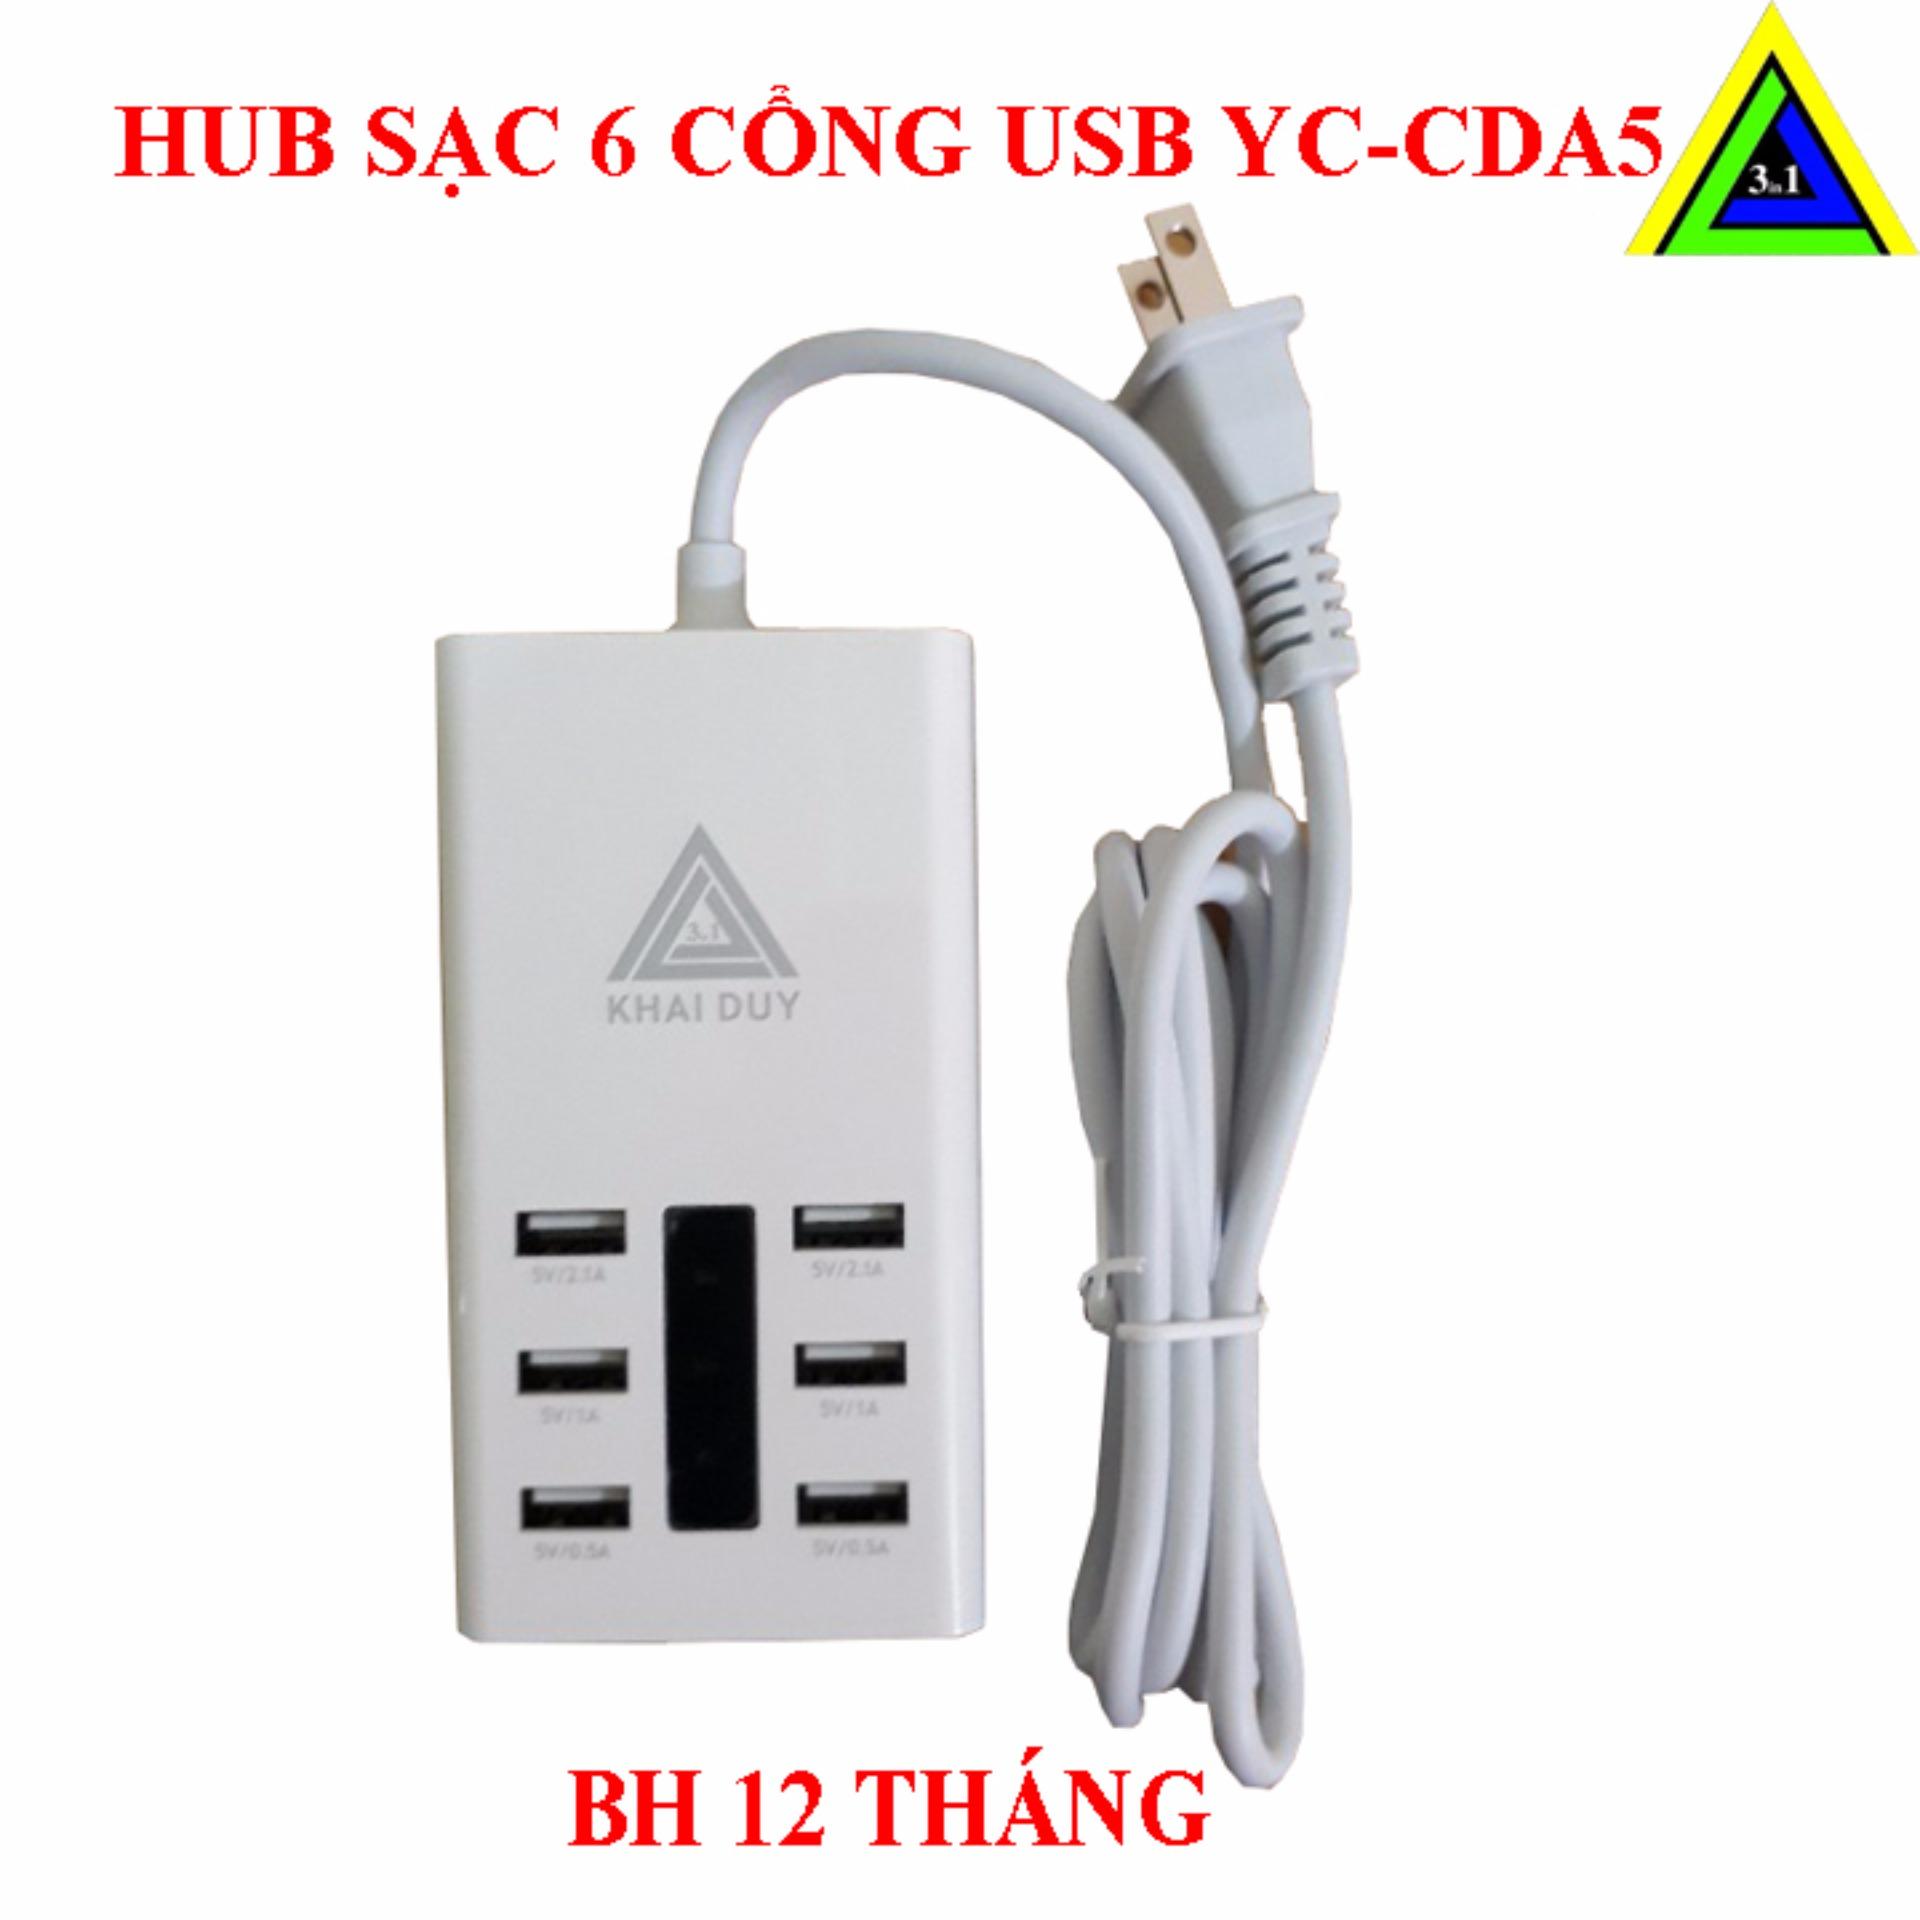 HUB SẠC USB 6 CỔNG YC-CDA5